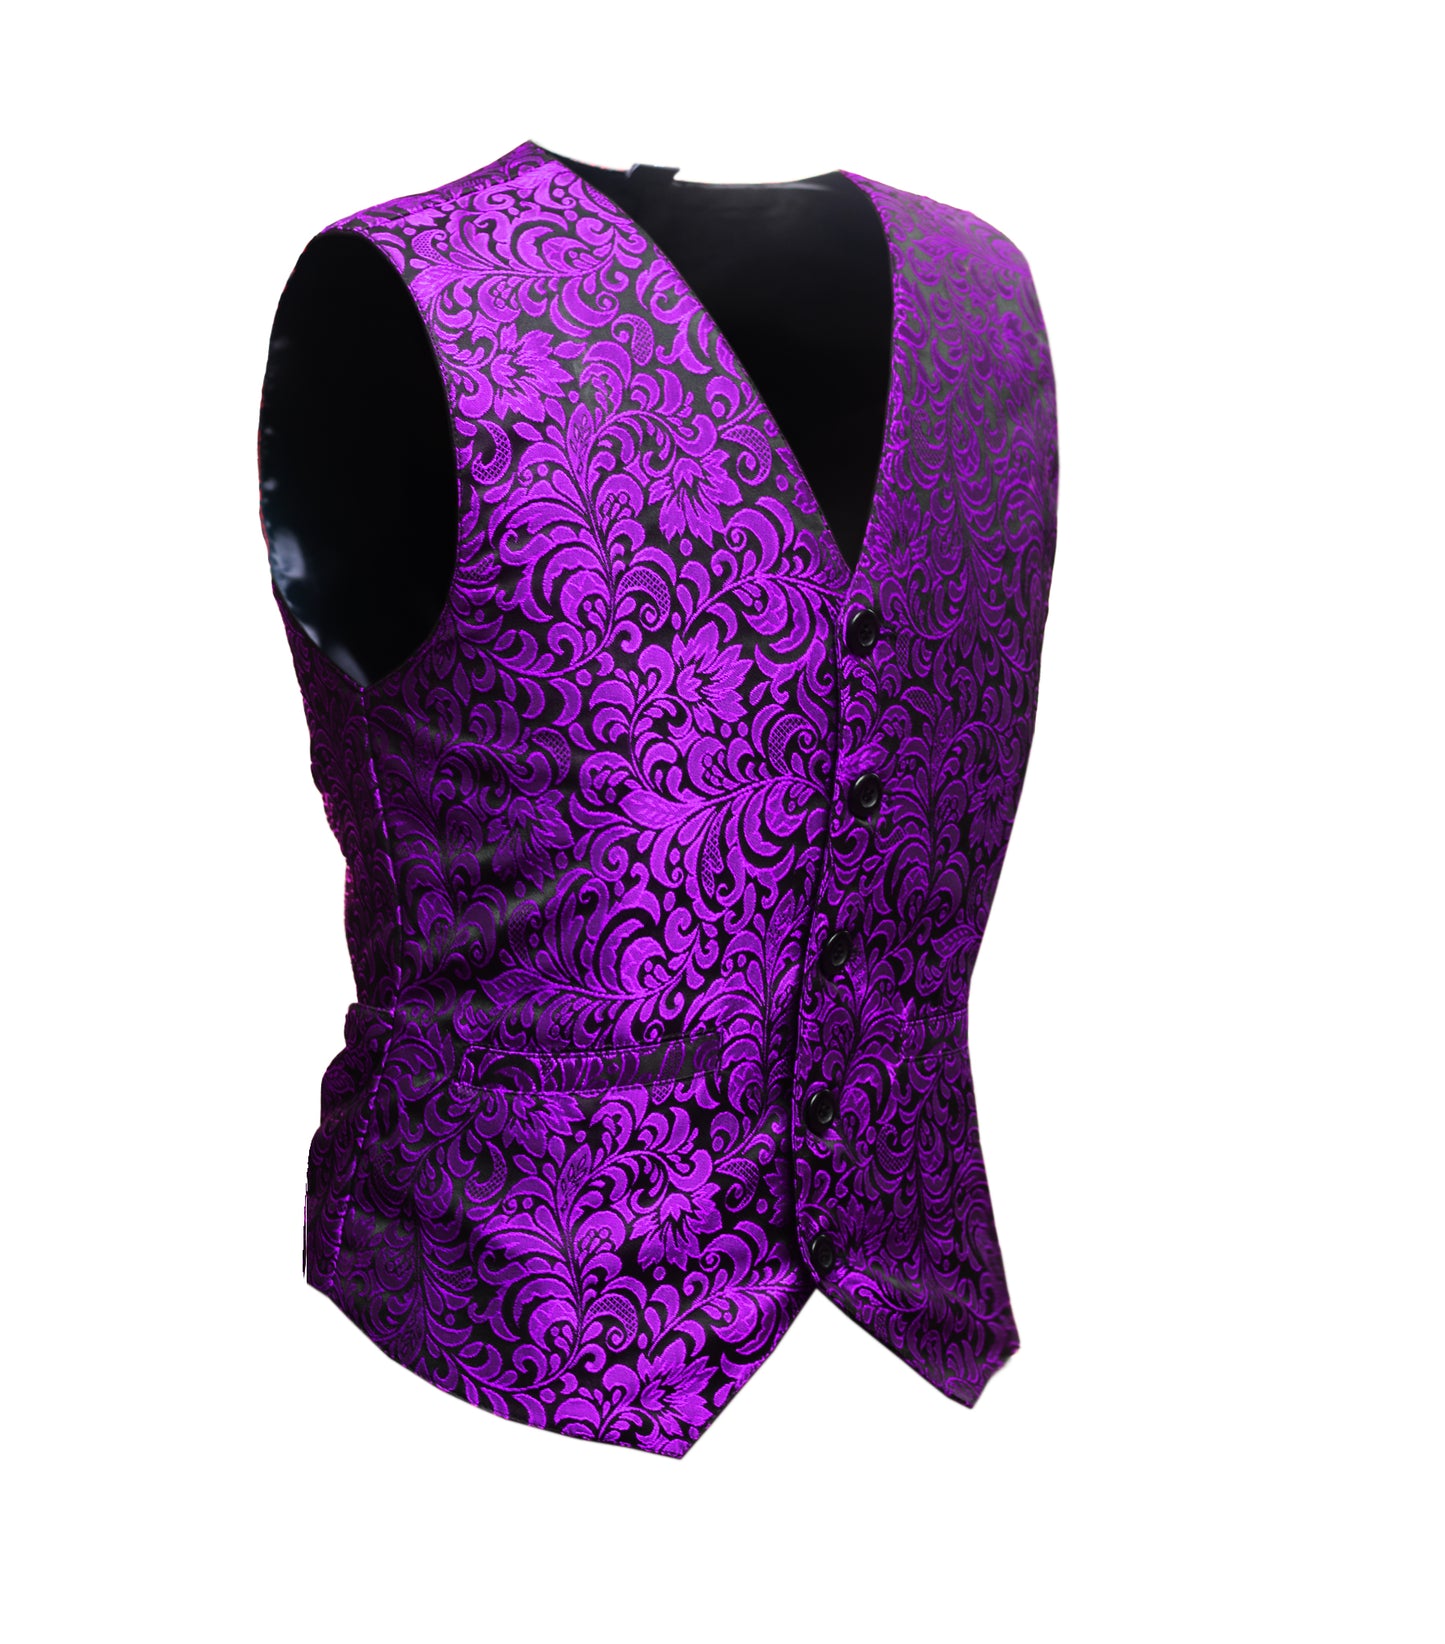 Purple Brocade Men's Waist Coat